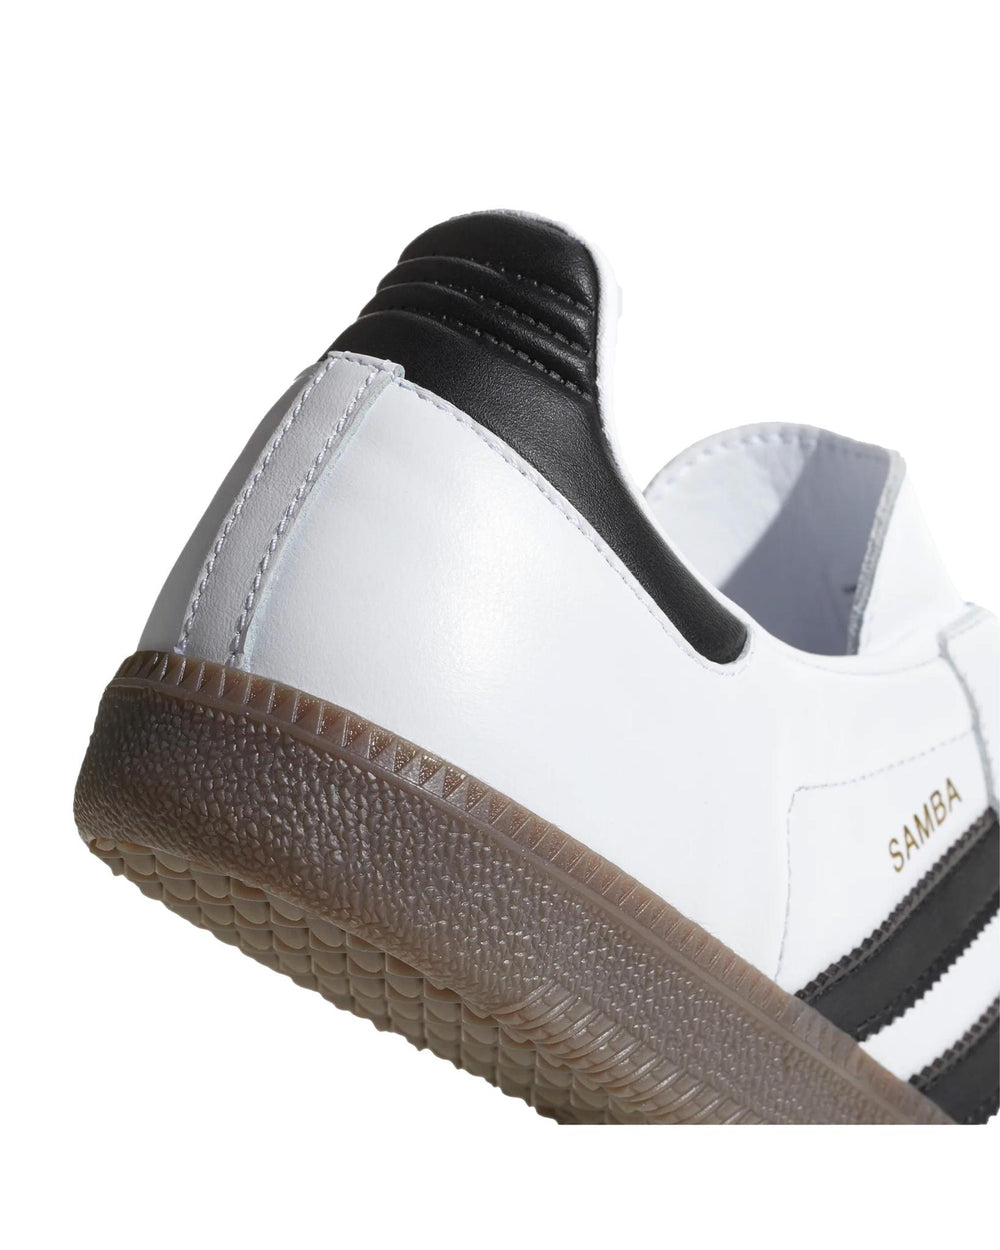 Adidas Samba OG White | STASHED